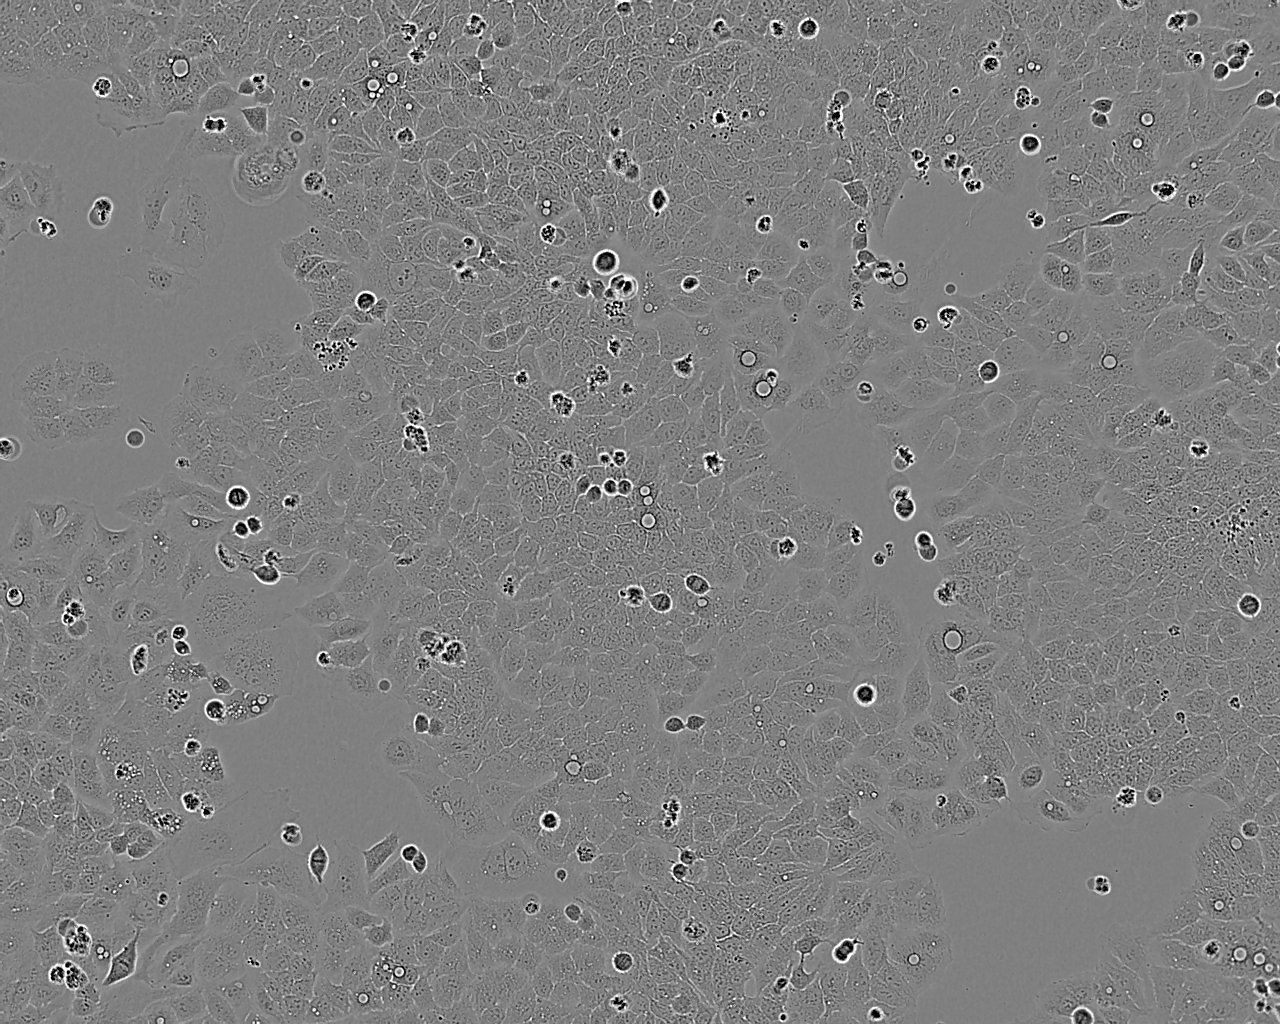 Hs 294T 人黑色素瘤细胞系,Hs 294T